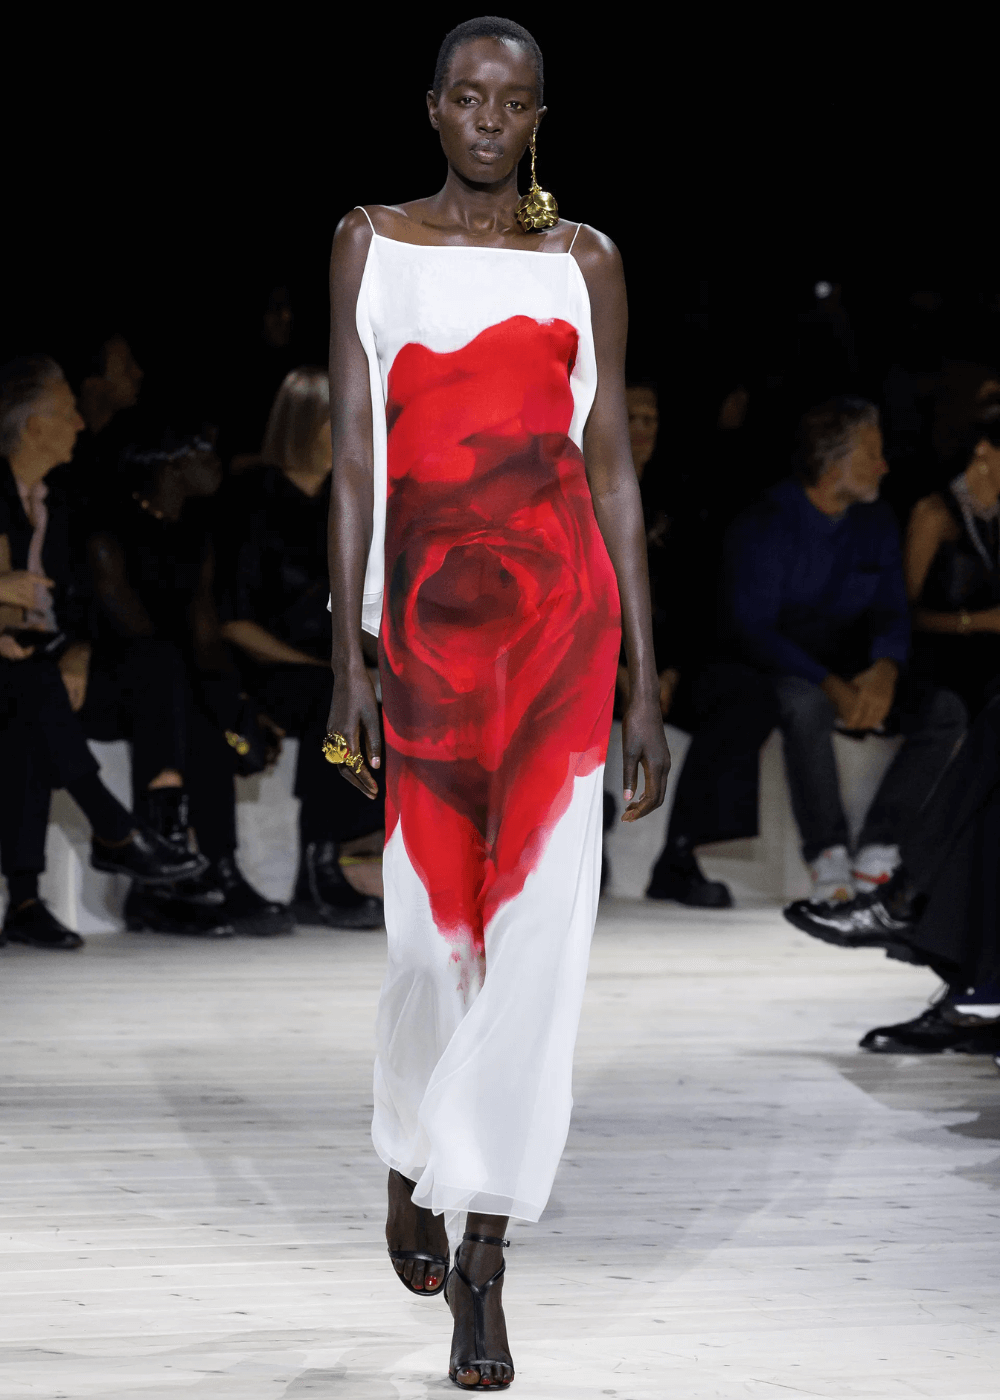 Alexander McQueen - vestido branco longo com estampa de flor vermelha - desfiles de moda - primavera - modelo negra desfilando na passarela - https://stealthelook.com.br